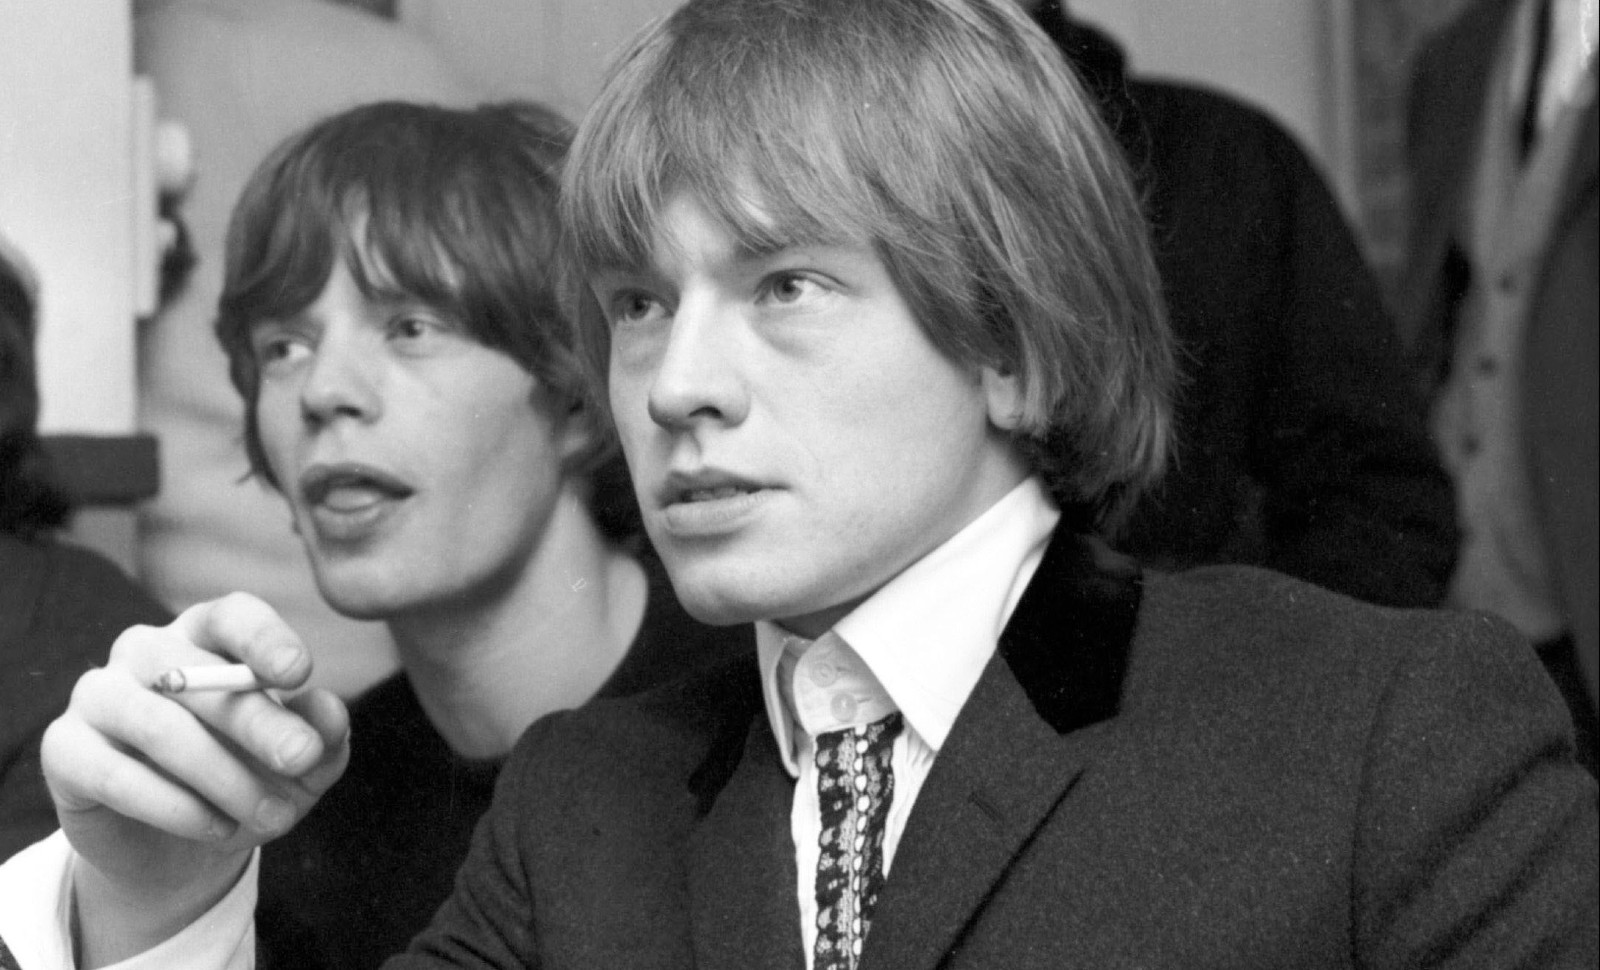 Arte: vie et mort de Brian Jones, écarté des Rolling Stones